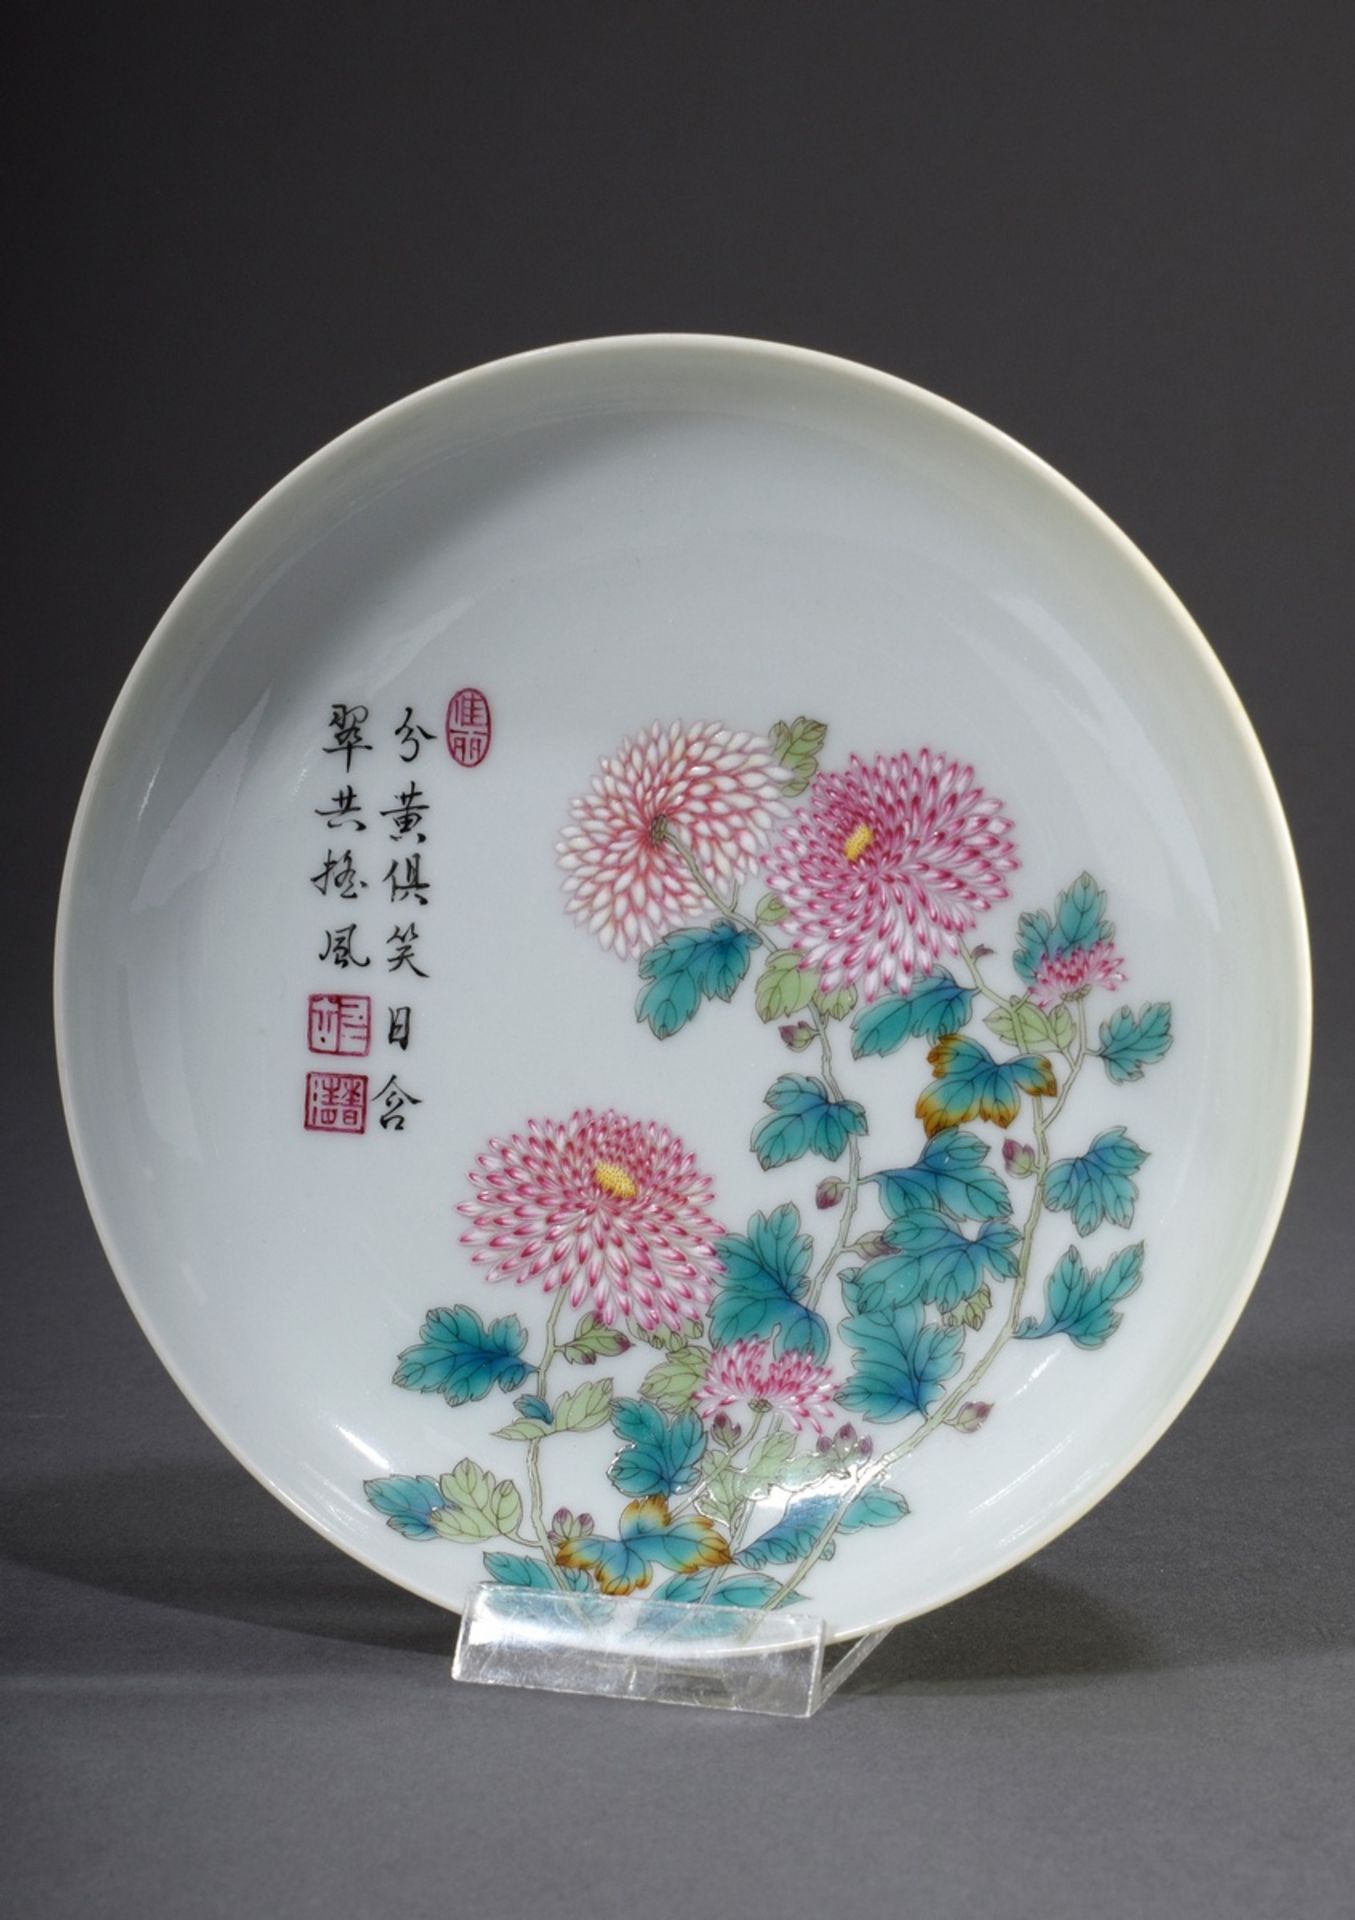 Flache chinesische Schale "Chrysanthemen" mit se | Flat Chinese bowl "Chrysanthemums" with poem on - Bild 2 aus 4